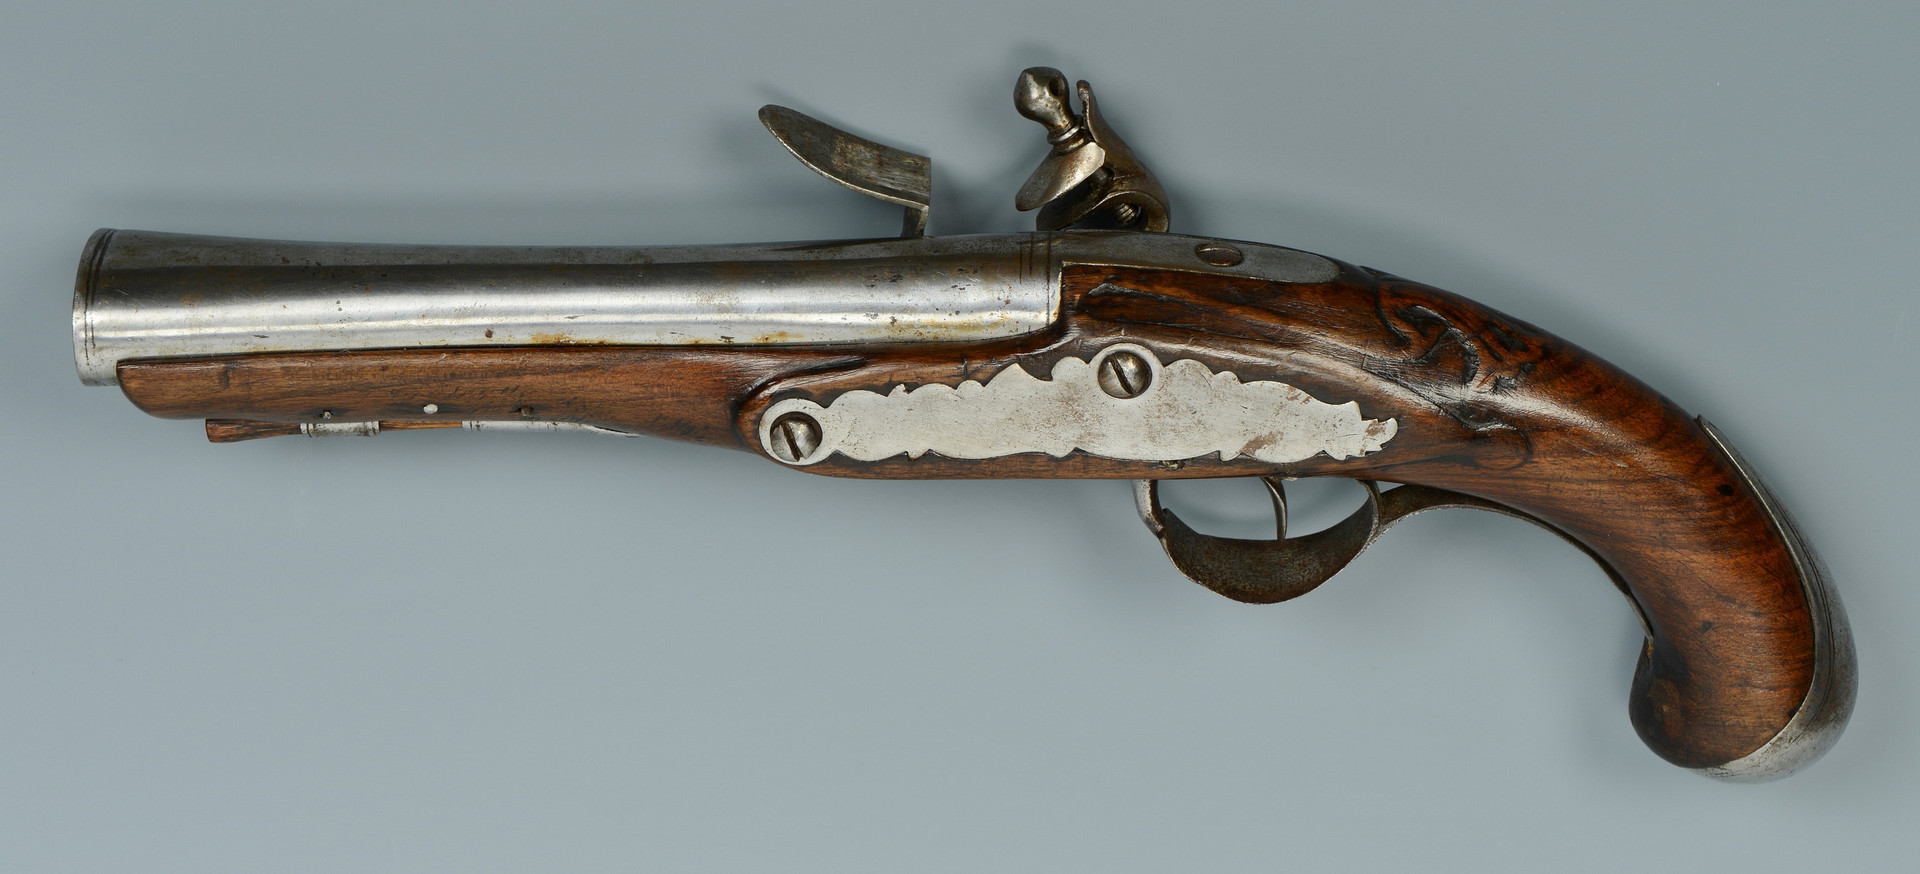 Lot 399: Flintlock Pistol with oval bore